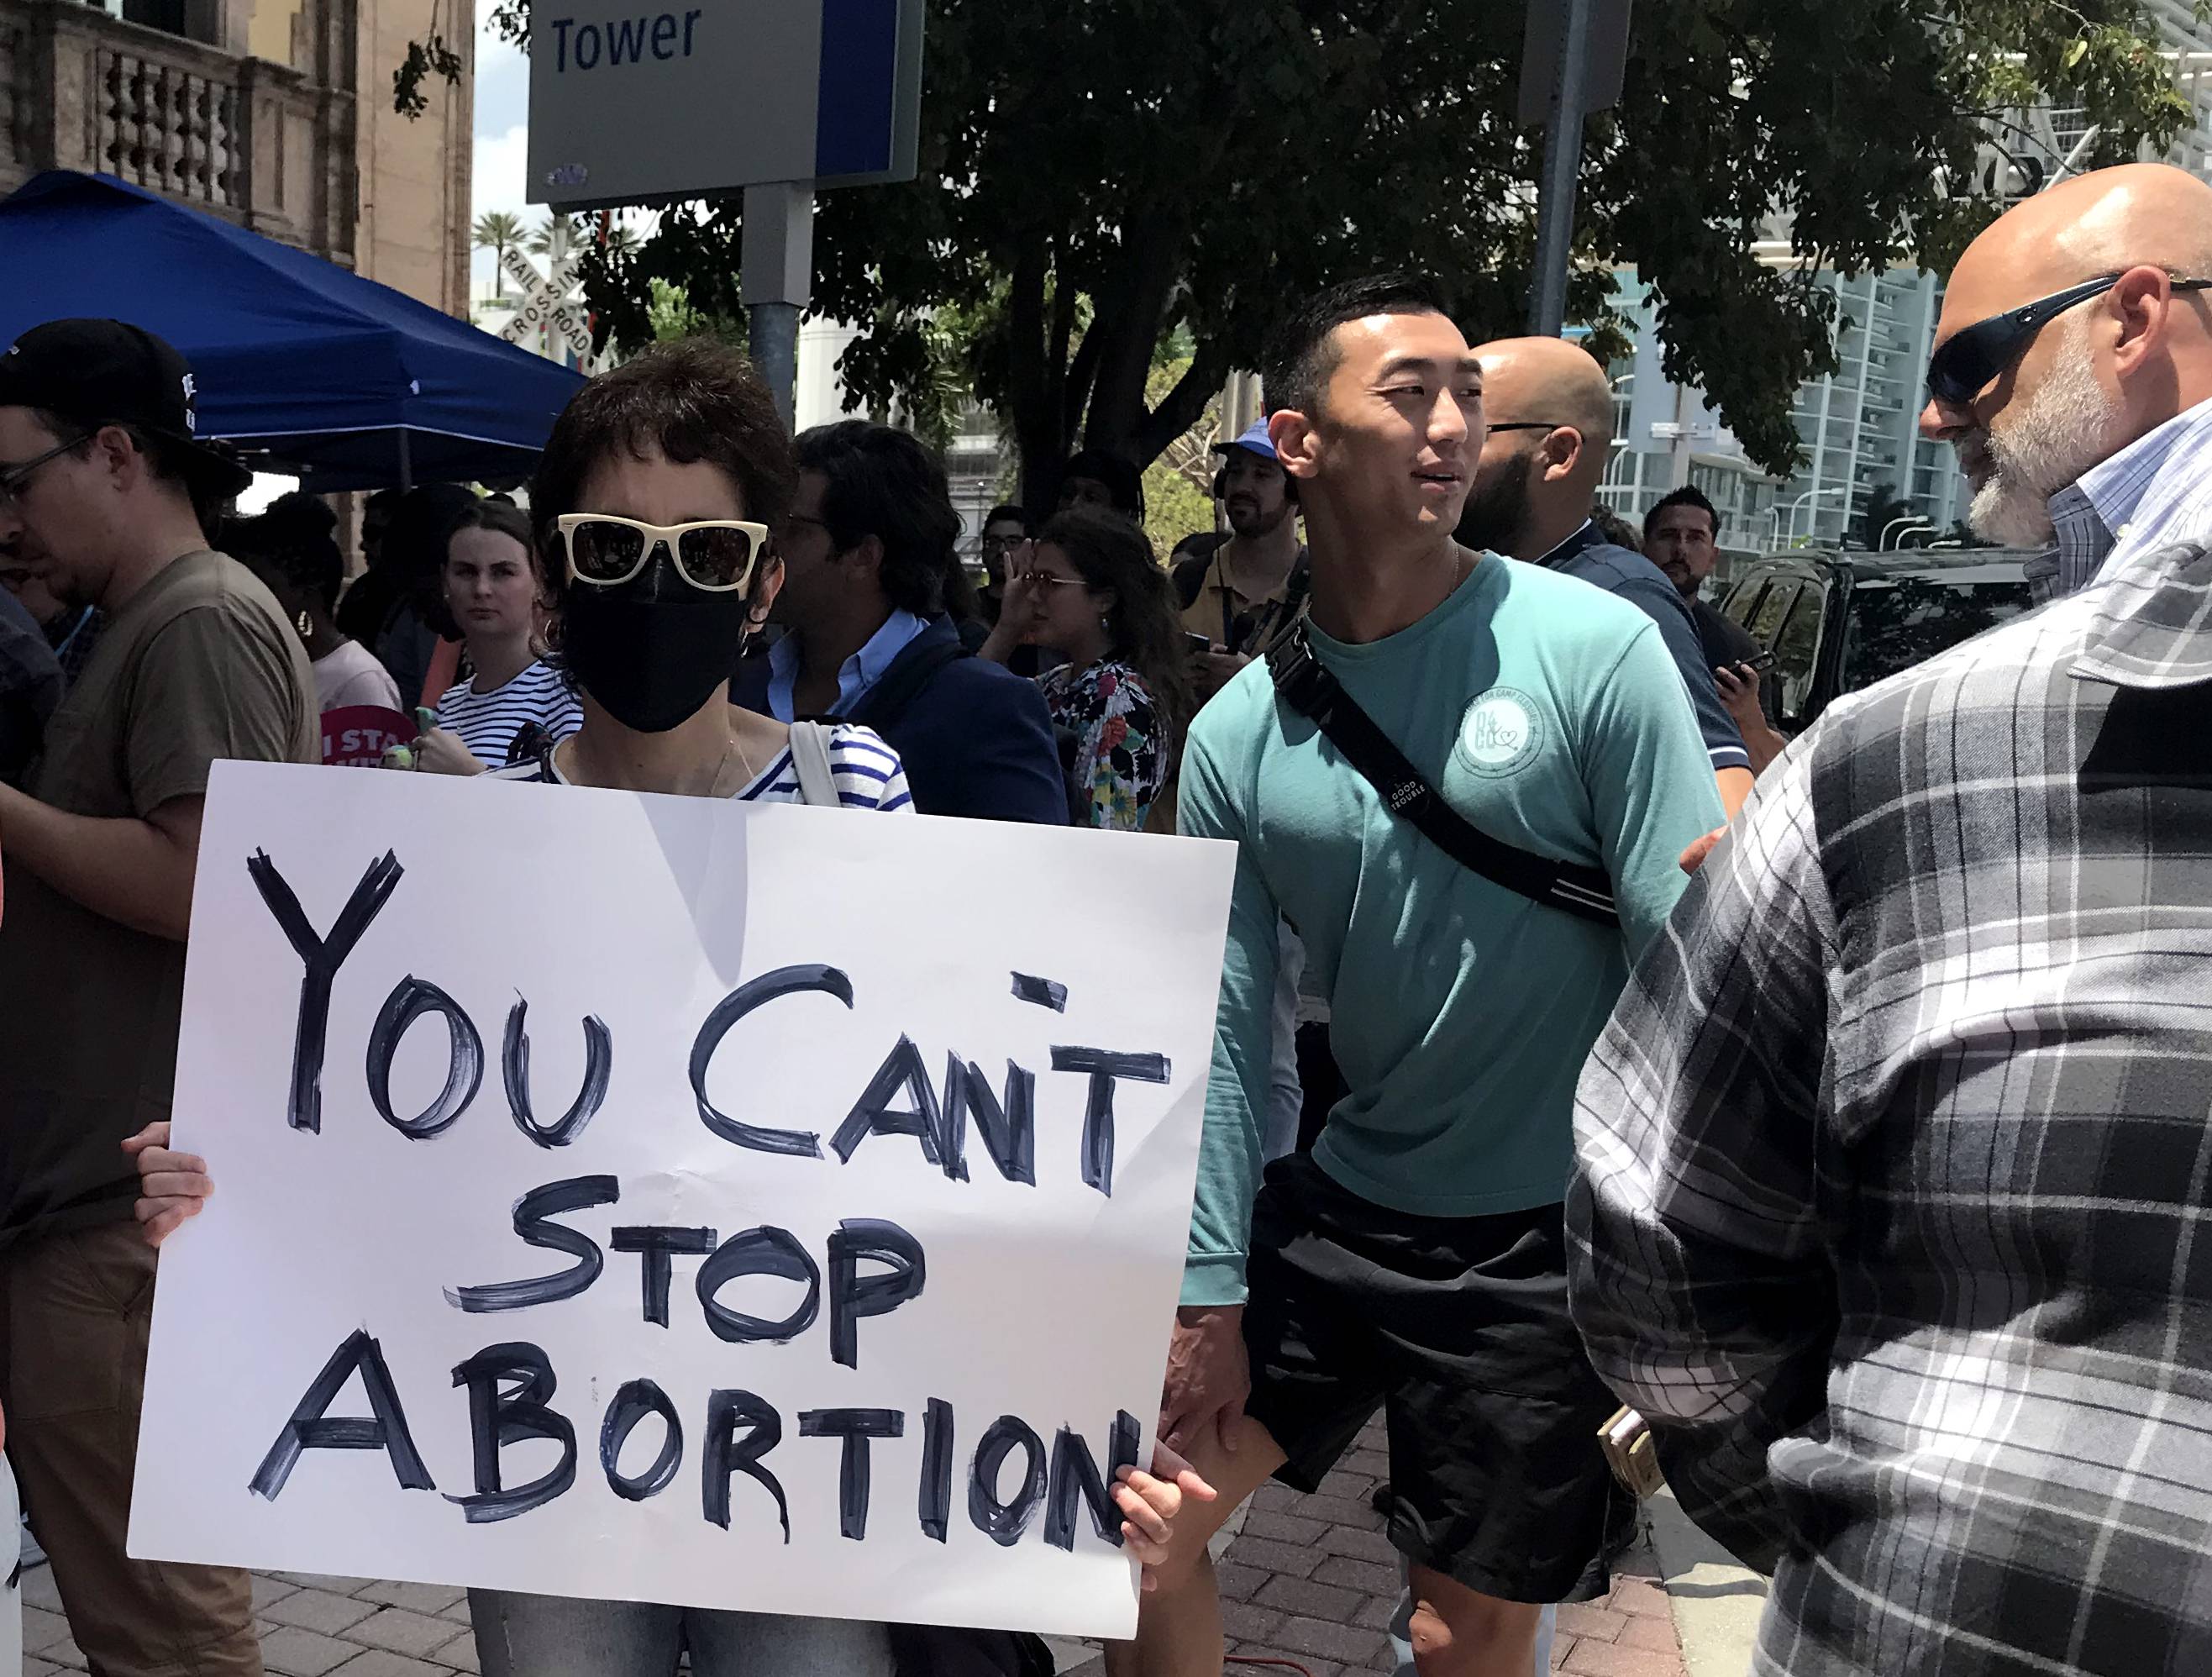 El Senado de EEUU tumba el proyecto de ley demócrata que perseguía proteger  el aborto en todo el país | Actualidad | Cadena SER